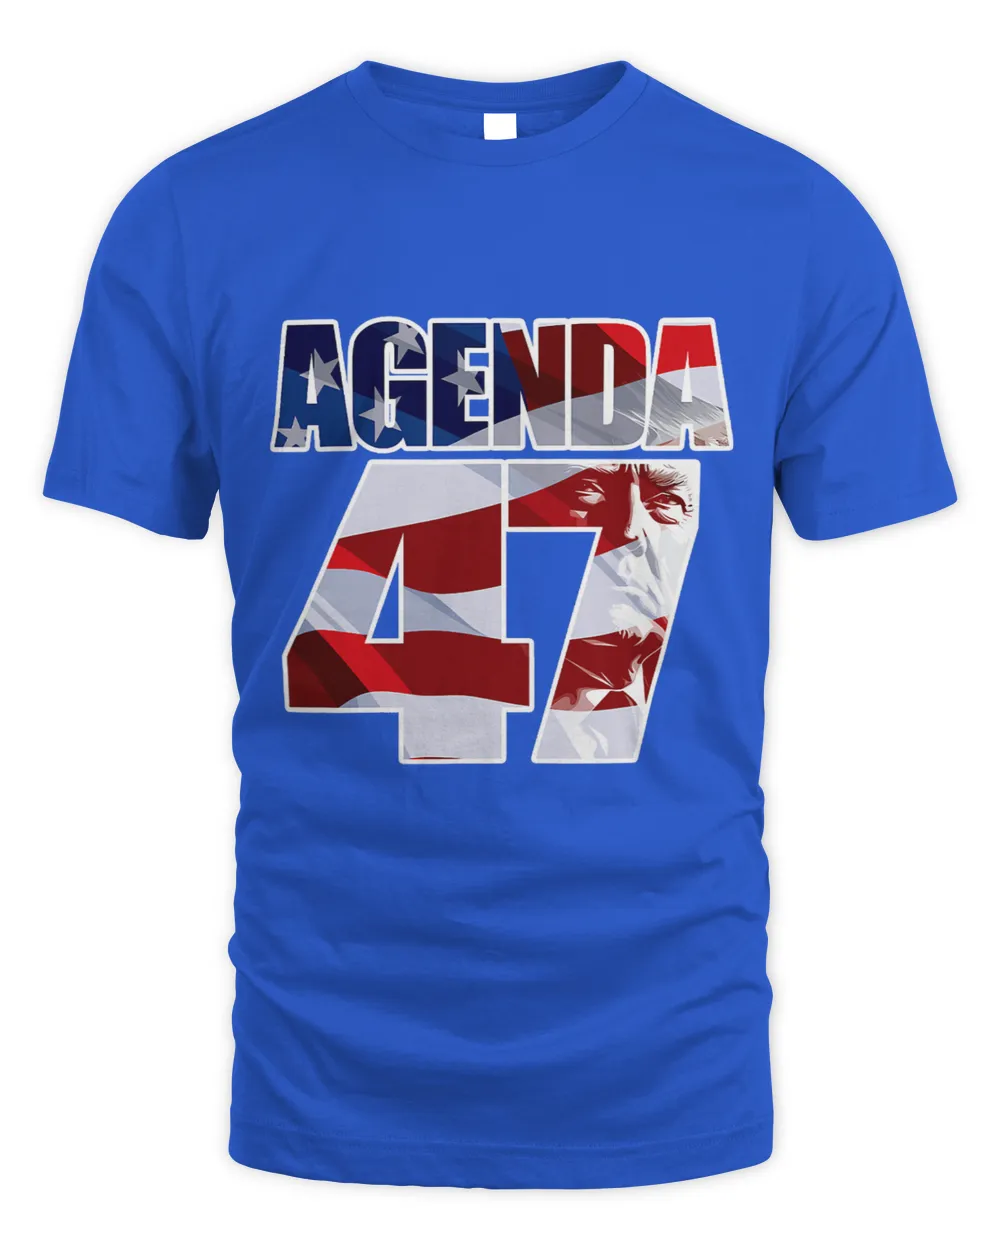 Agenda 47 Patriotic Trump ReElection Campaign Design